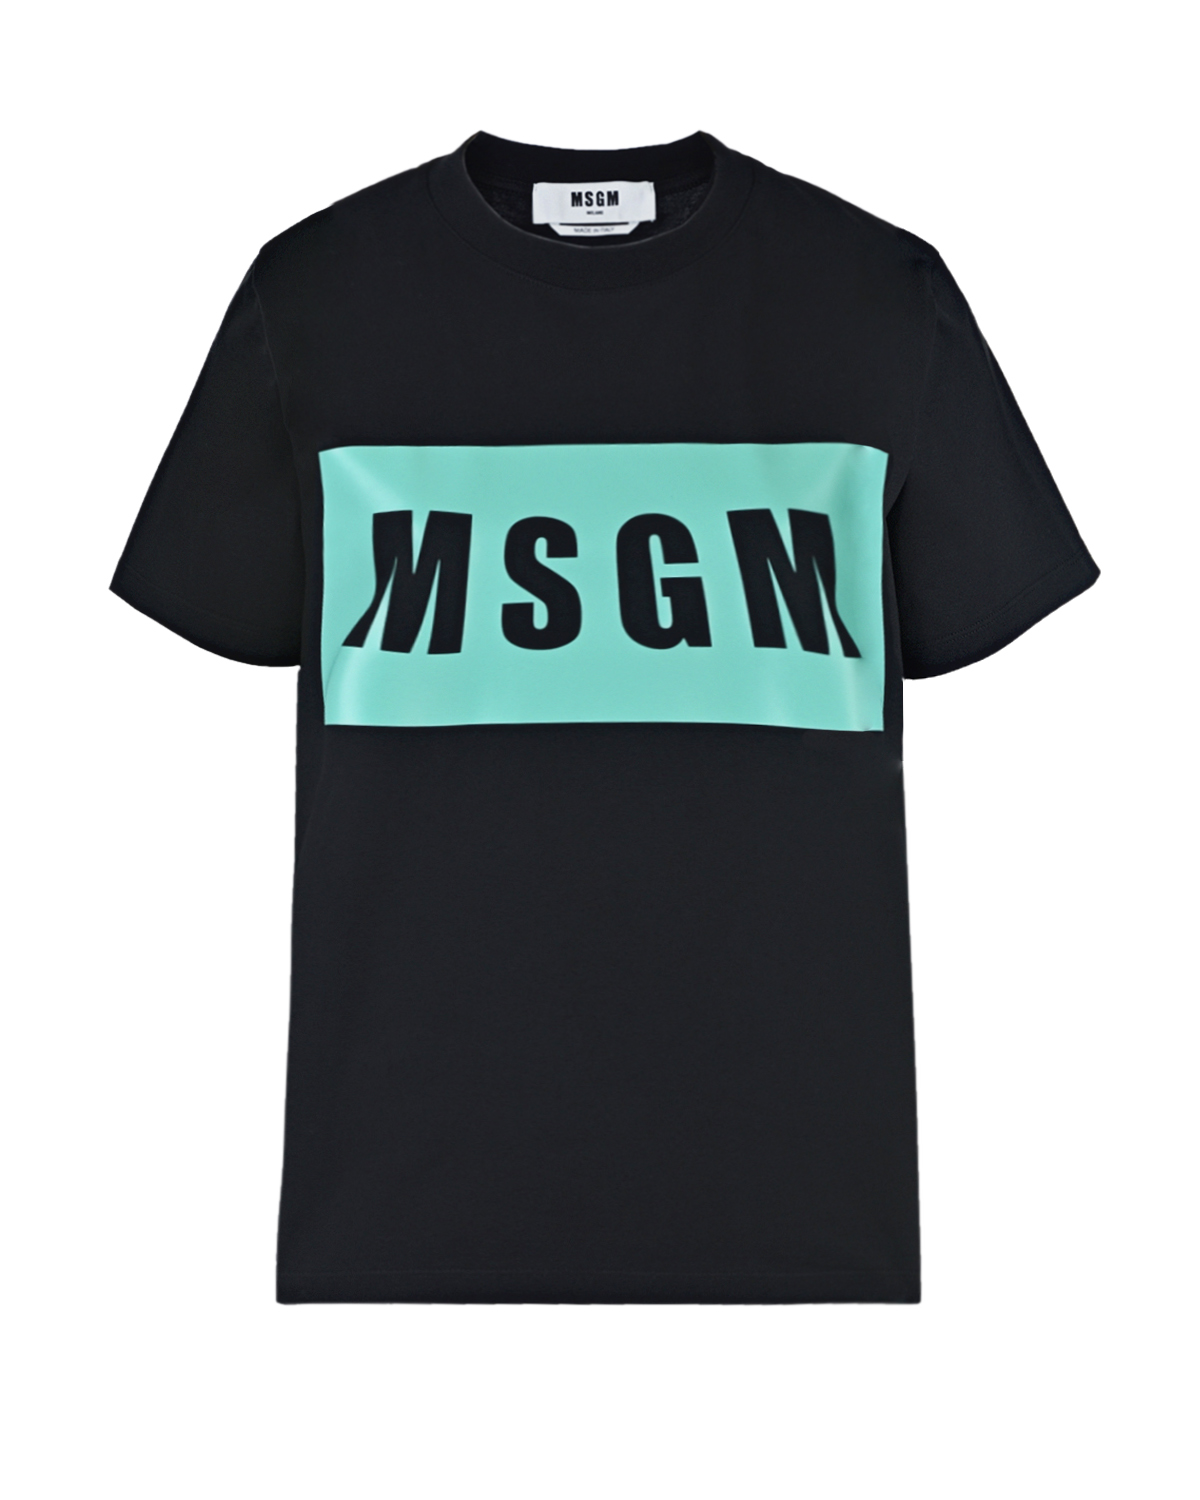 Черная футболка с прямоугольным принтом MSGM, размер 40, цвет черный - фото 1